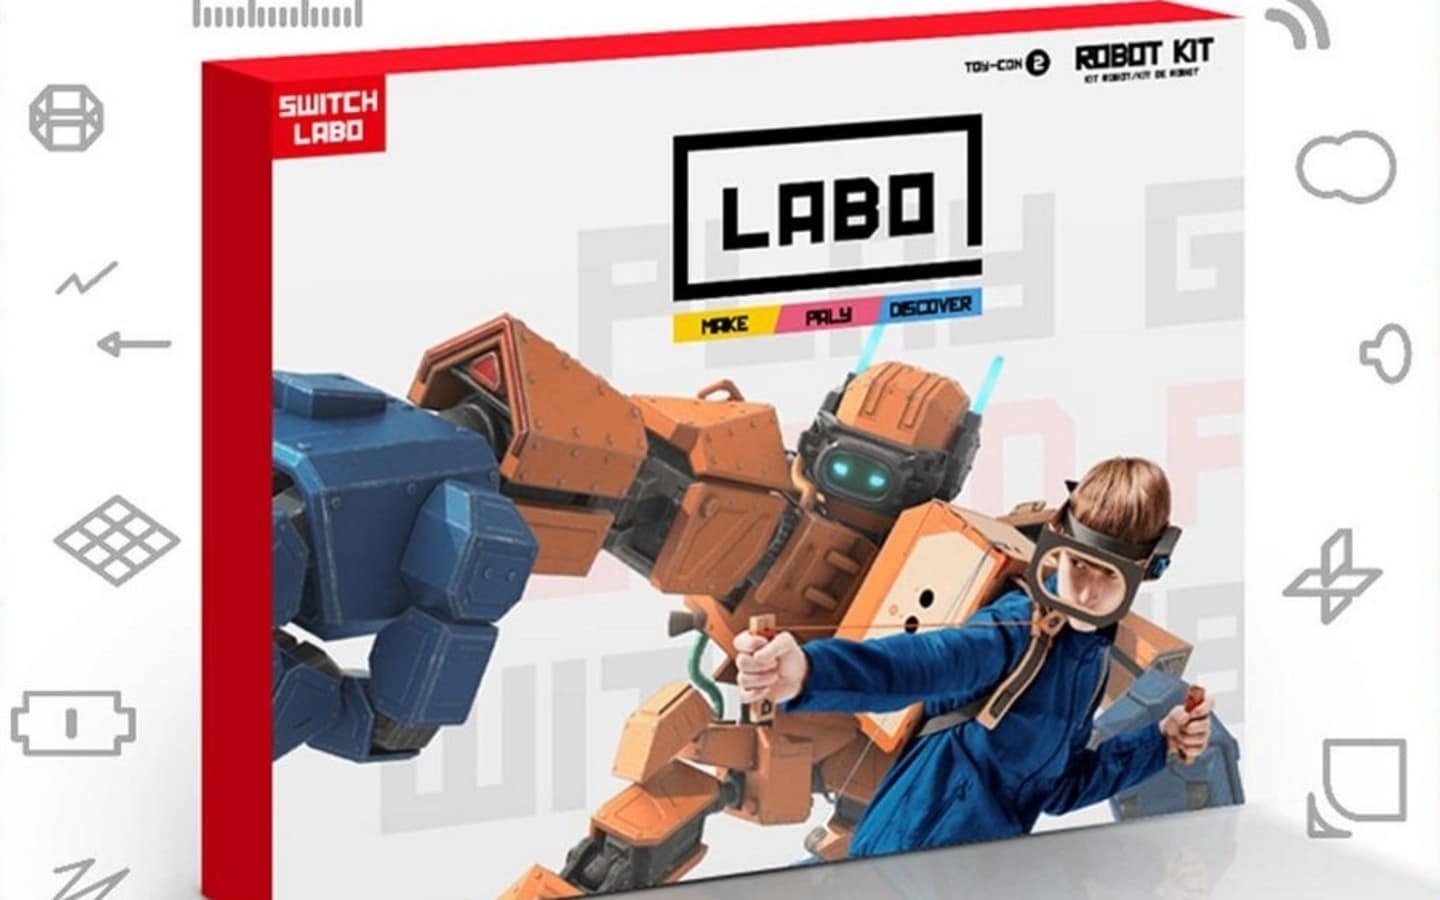 Varios kits falsos de Nintendo Labo han sido distribuidos por Asia